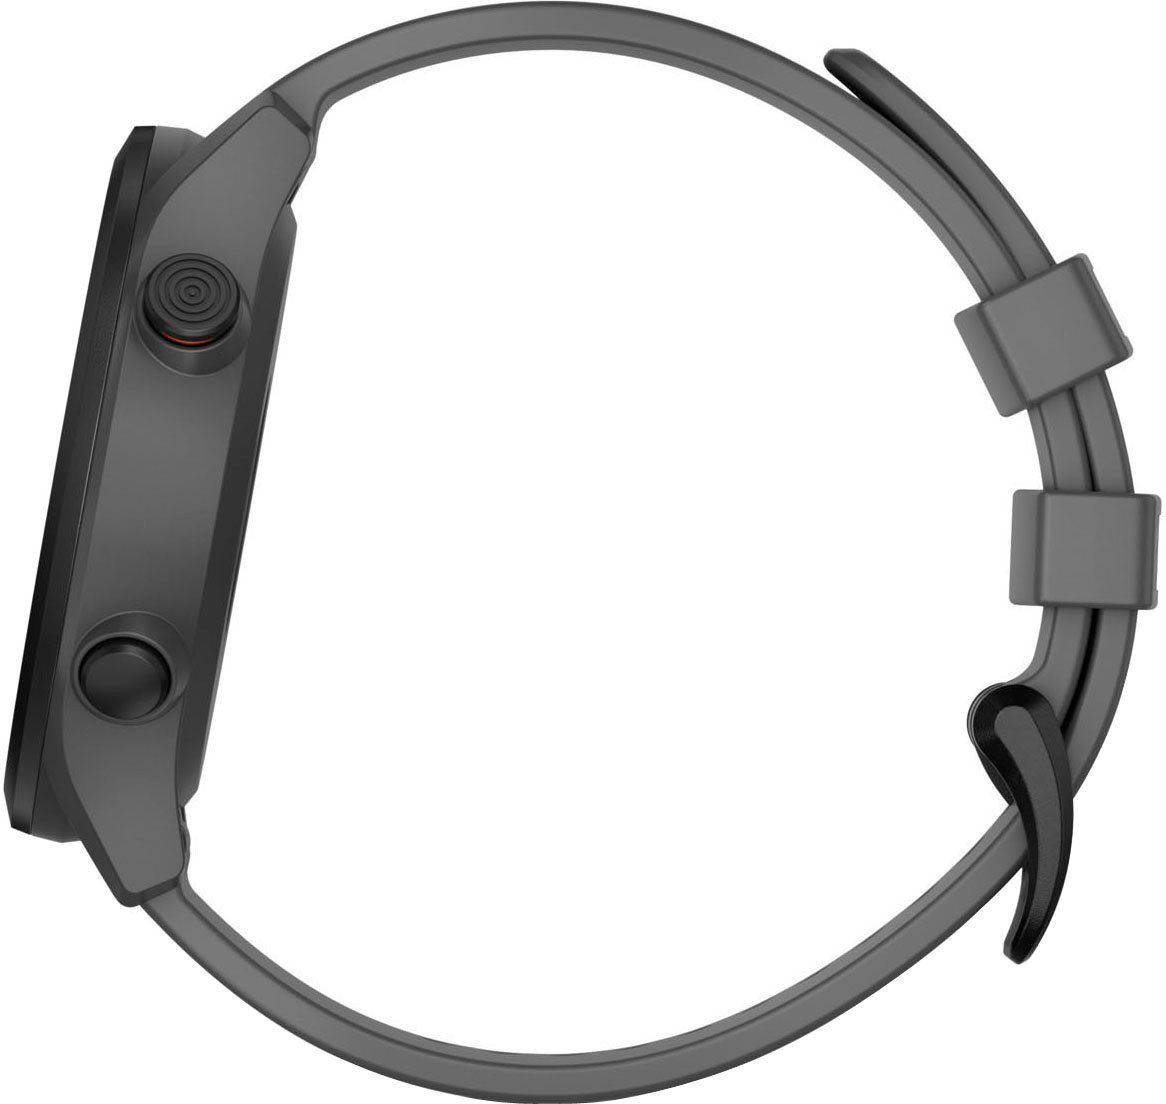 Garmin APPROACH S12 2022 grau Smartwatch | cm/1,3 Edition Zoll, (3,3 grau/schwarz Garmin)